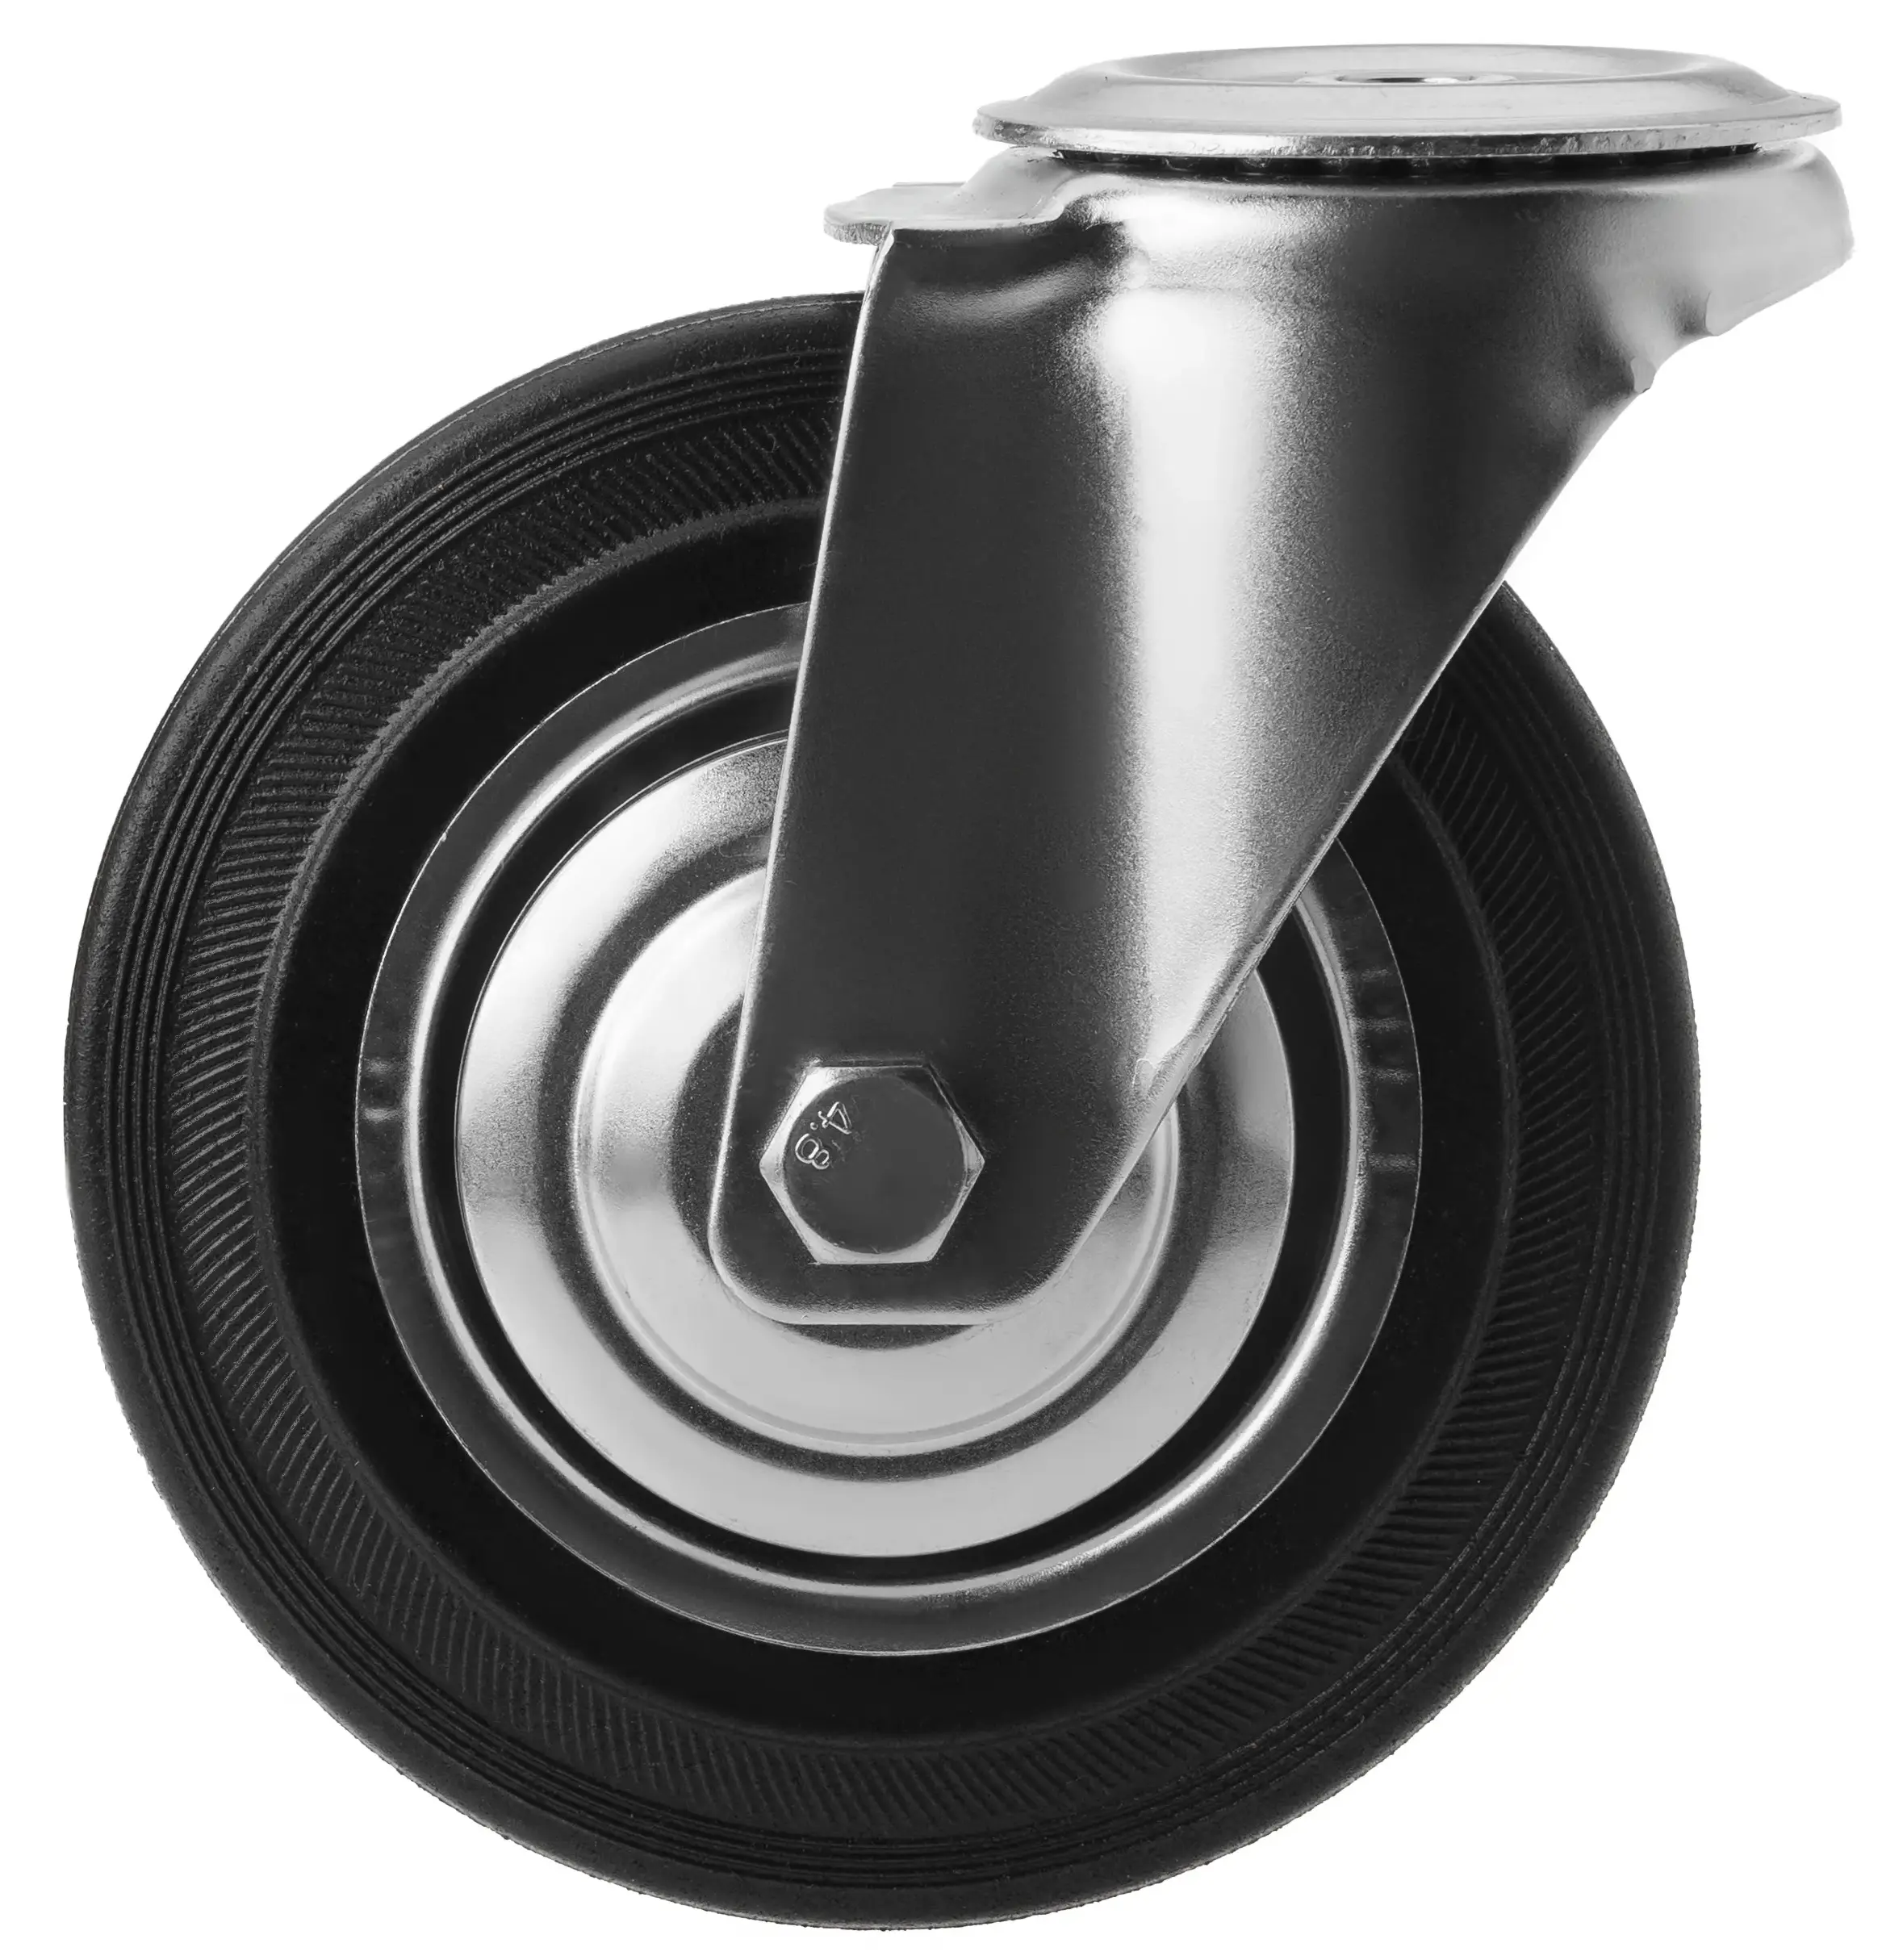 Промышленное колесо, диаметр 160мм, крепление под болт 16 мм, поворотная опора, черная резина, роликовый подшипник - SCh 63 (16)